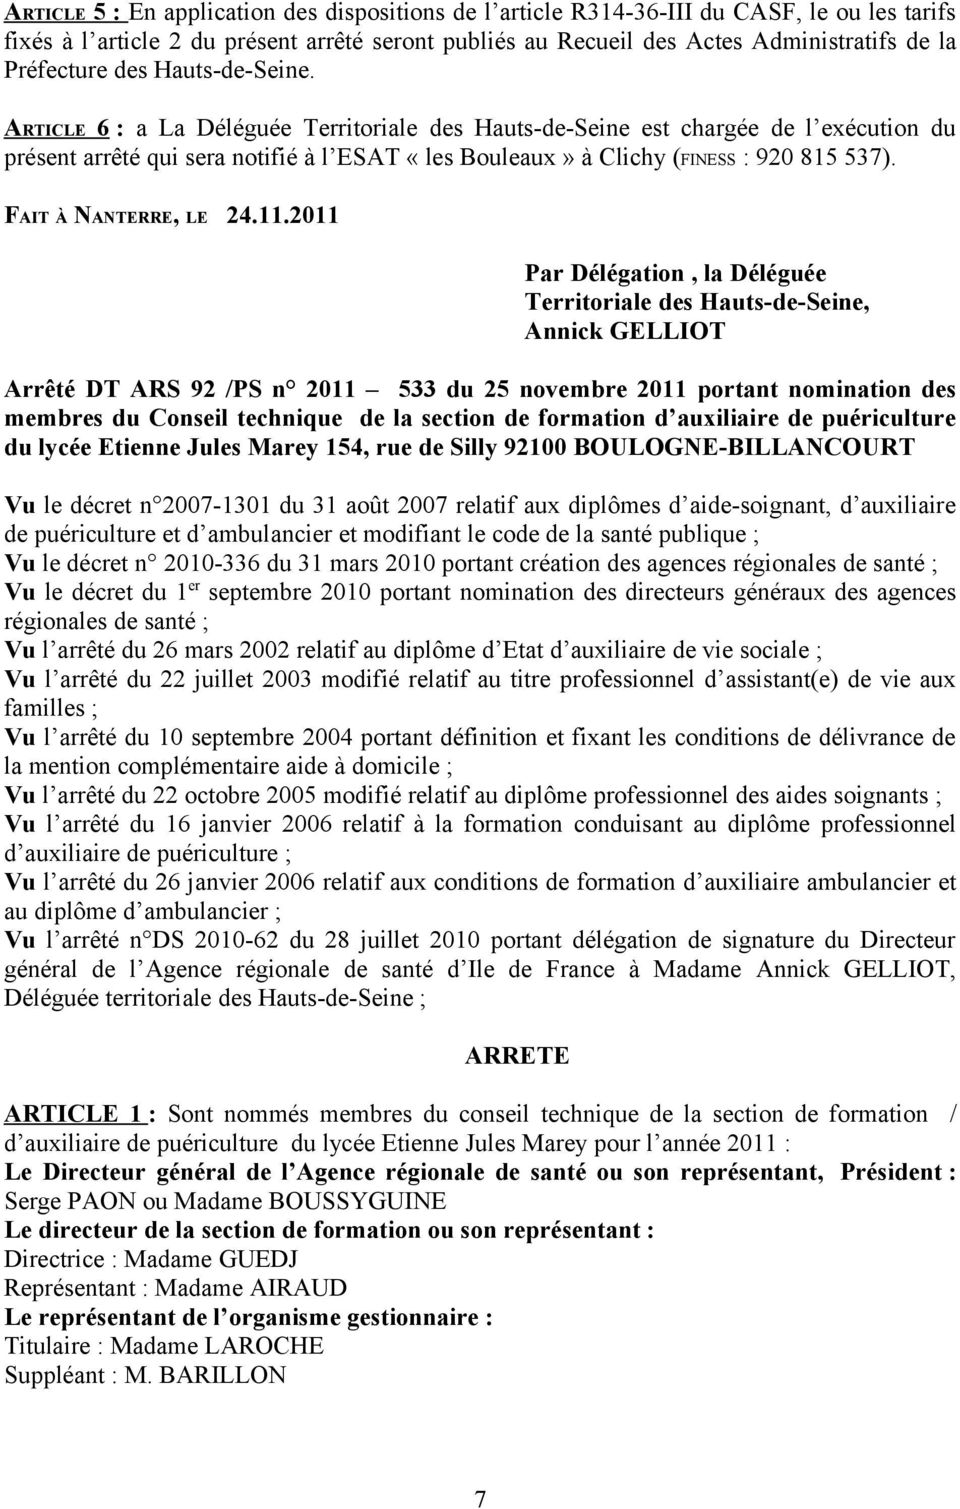 ARTICLE 6 : a La Déléguée Territoriale des Hauts-de-Seine est chargée de l exécution du présent arrêté qui sera notifié à l ESAT «les Bouleaux» à Clichy (FINESS : 920 815 537). FAIT À NANTERRE, LE 24.